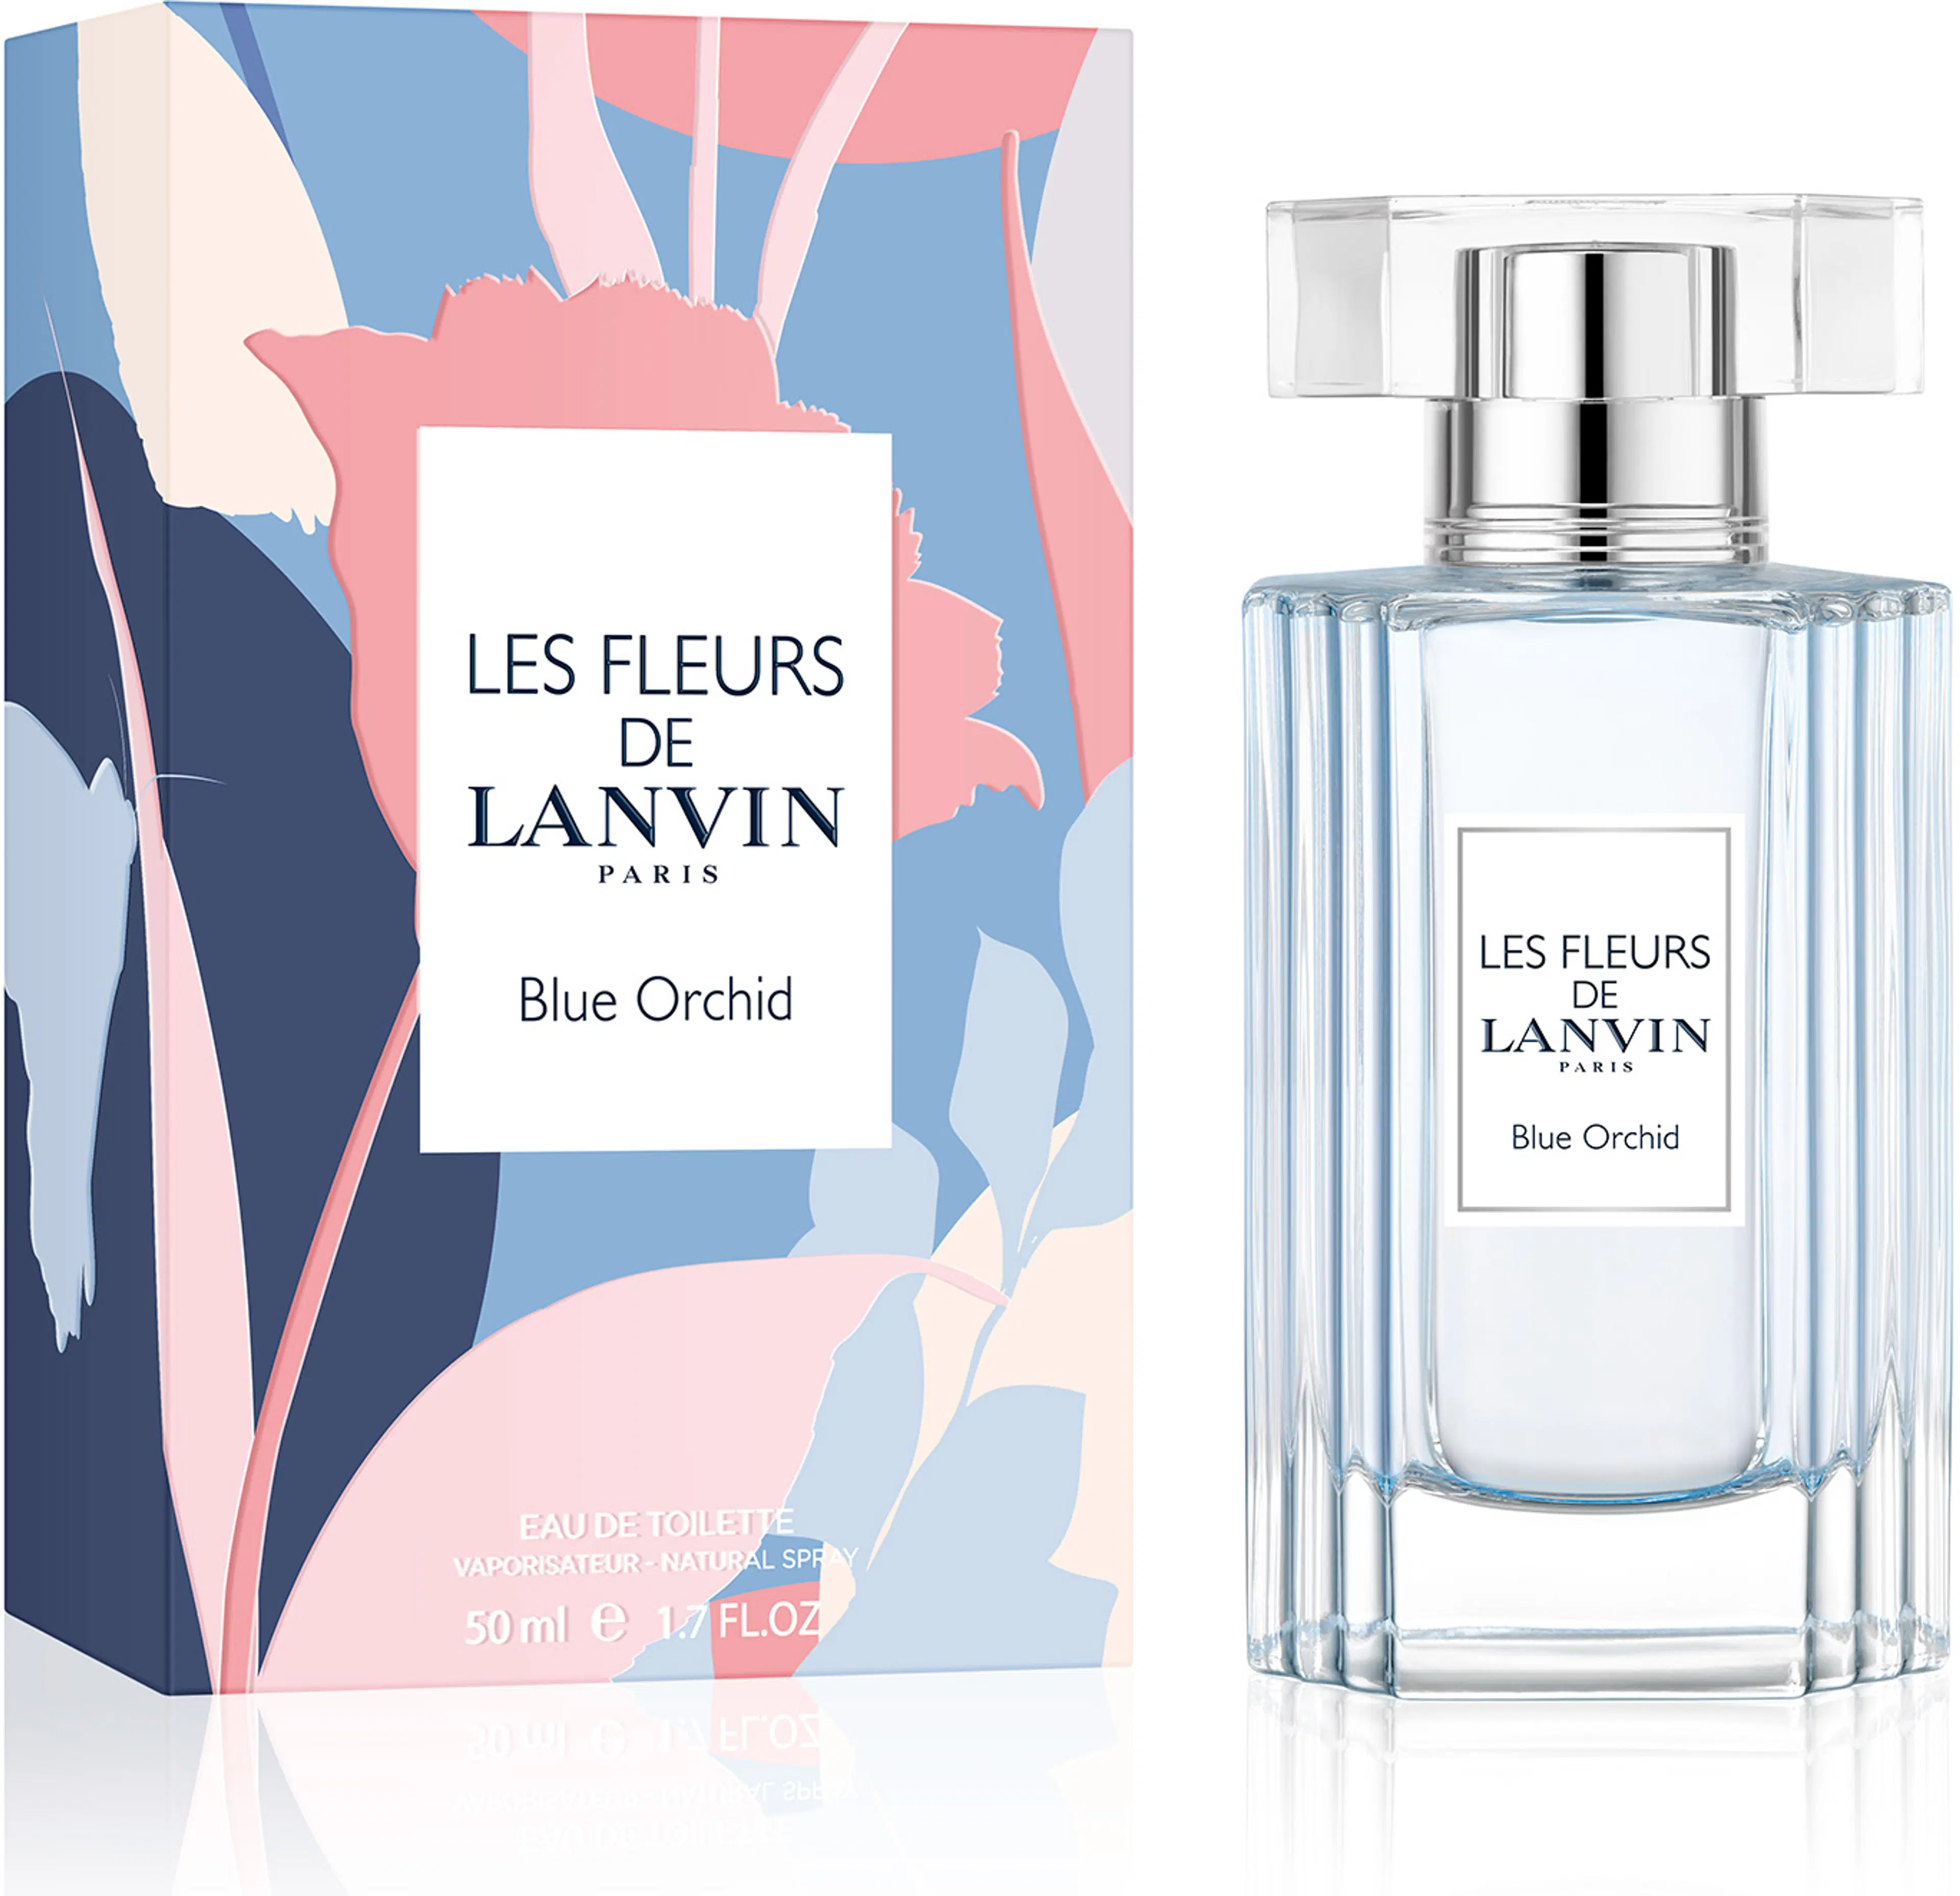 Lanvin Les Fleurs de Lanvin Blue Orchid EdT tuoksu 50 ml